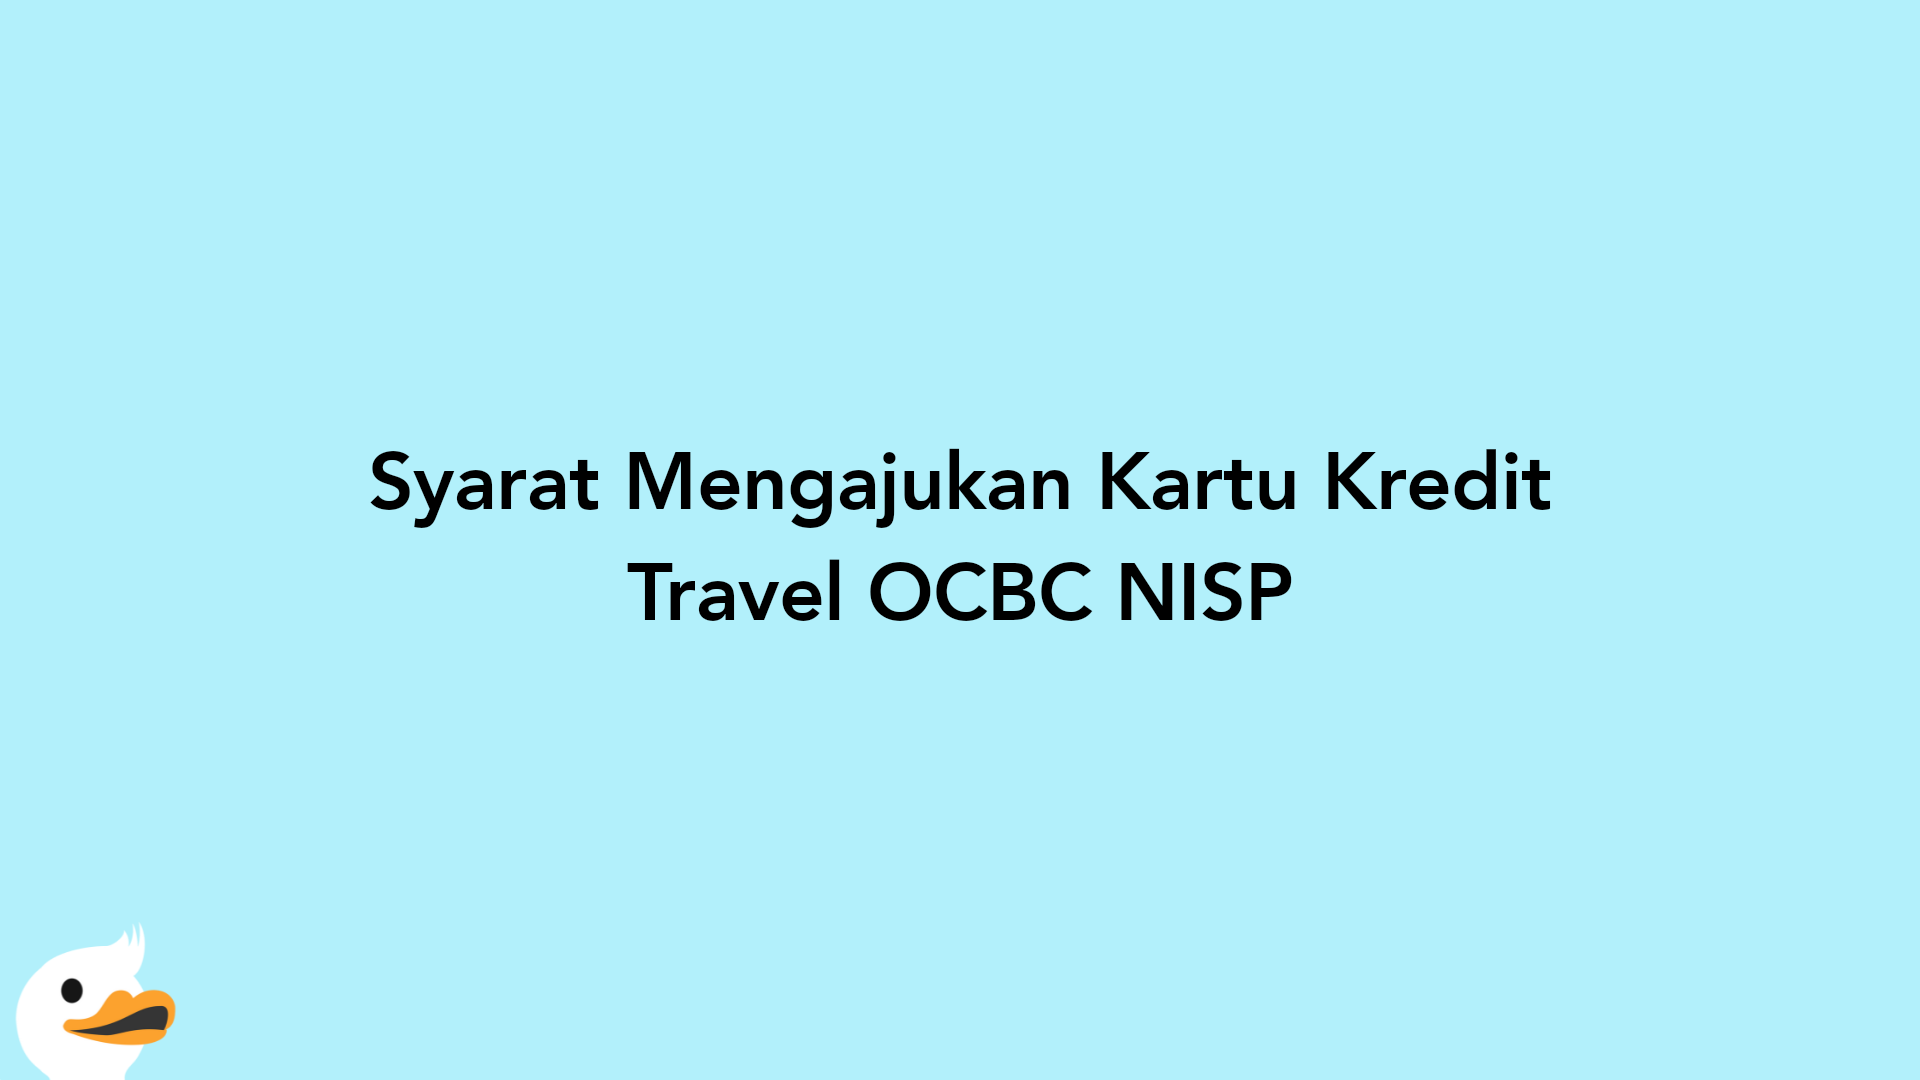 Syarat Mengajukan Kartu Kredit Travel OCBC NISP